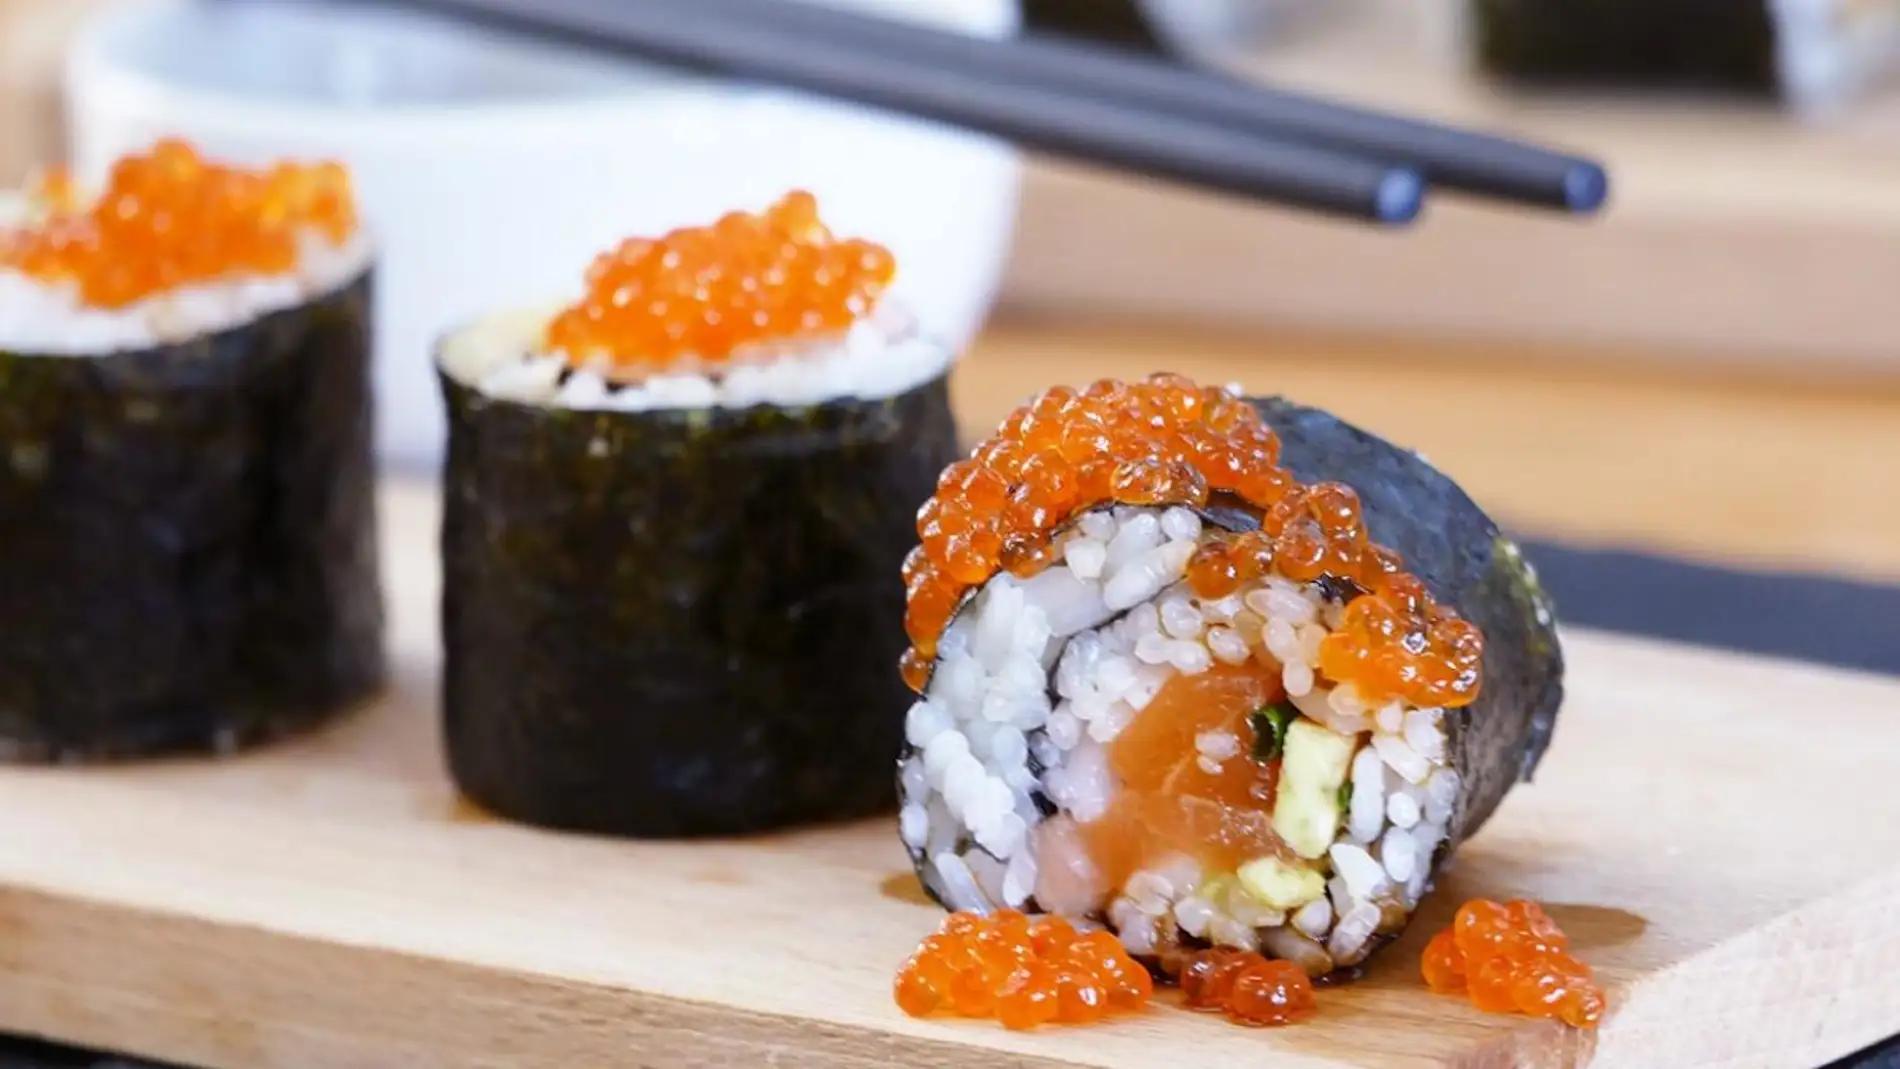 el sushi es pescado crudo - Cuál es el sushi que no es crudo